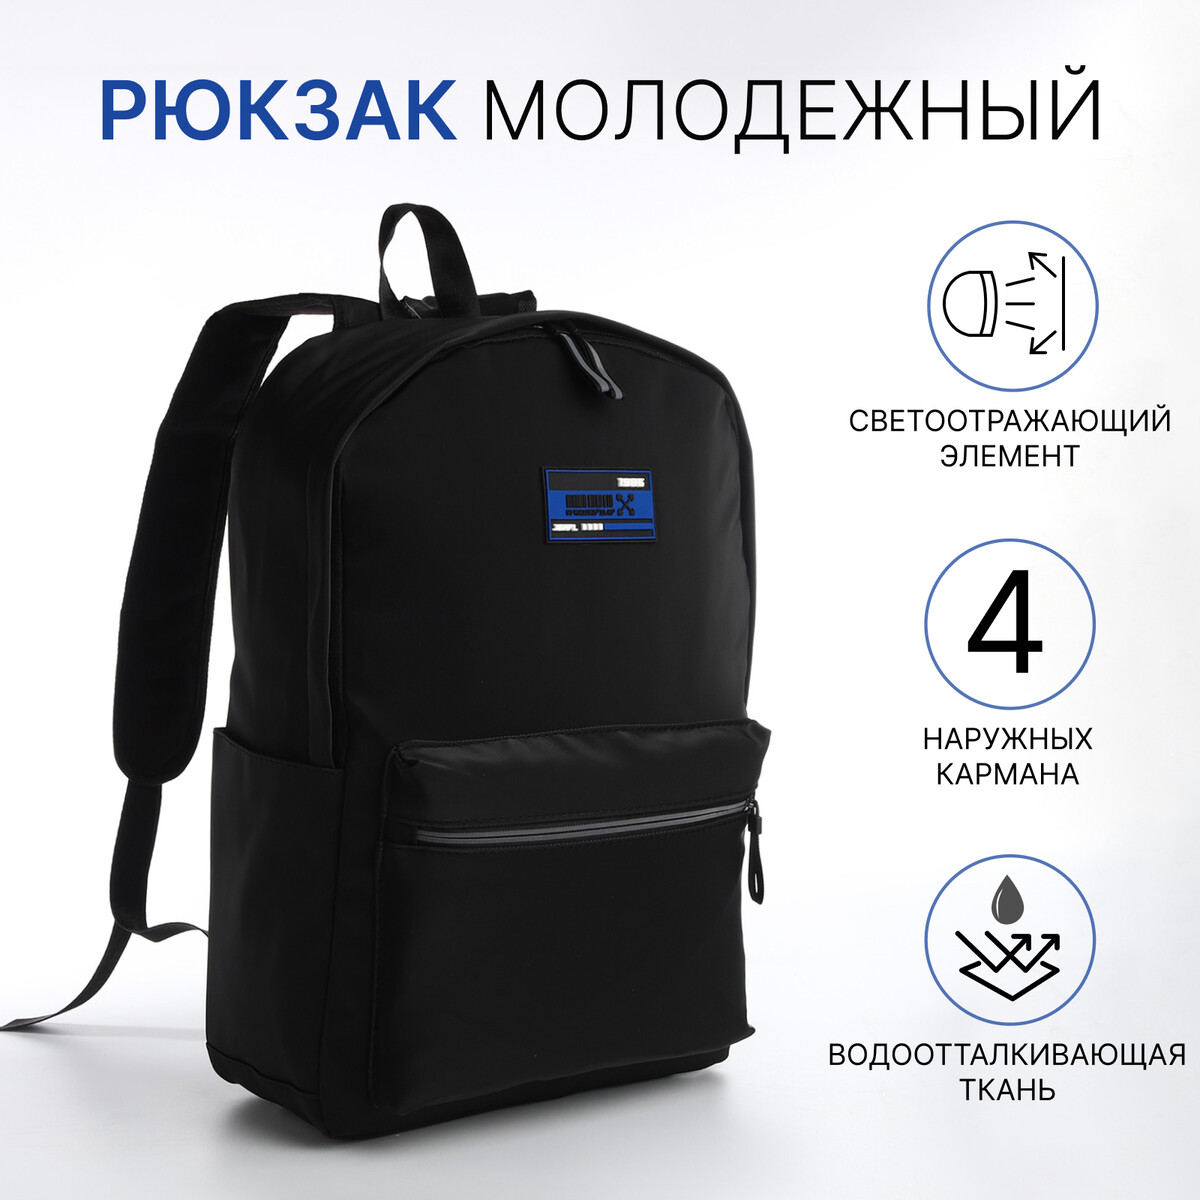 Рюкзак молодежный из текстиля на молнии, 4 кармана, цвет черный/синий рюкзак молодежный из текстиля на молнии 3 кармана сумка держатель для чемодана синий